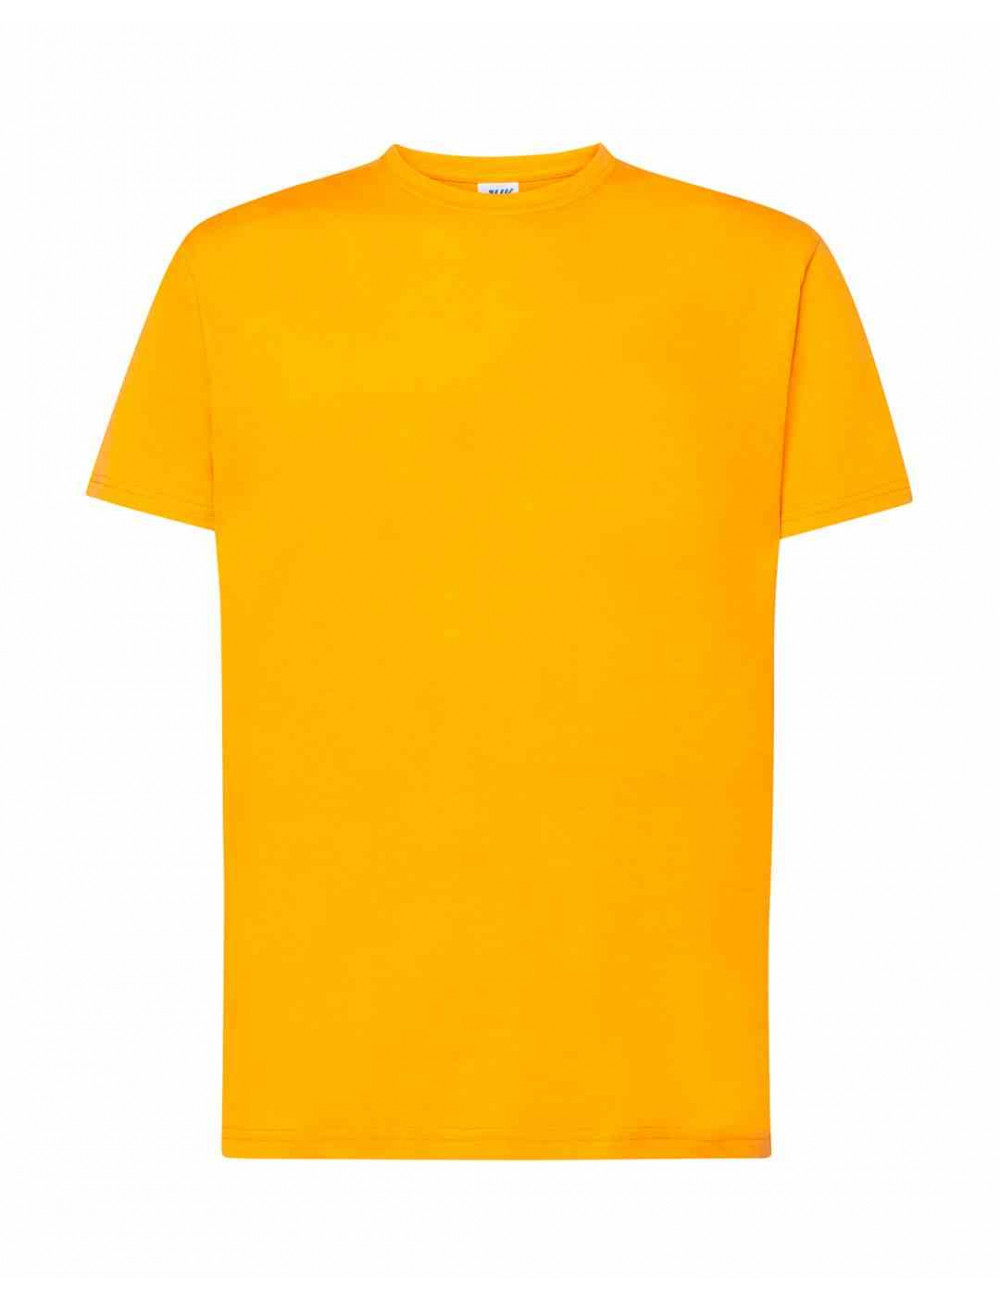 Koszulka męska tsra 150 regular t-shirt tg - tangerine Jhk